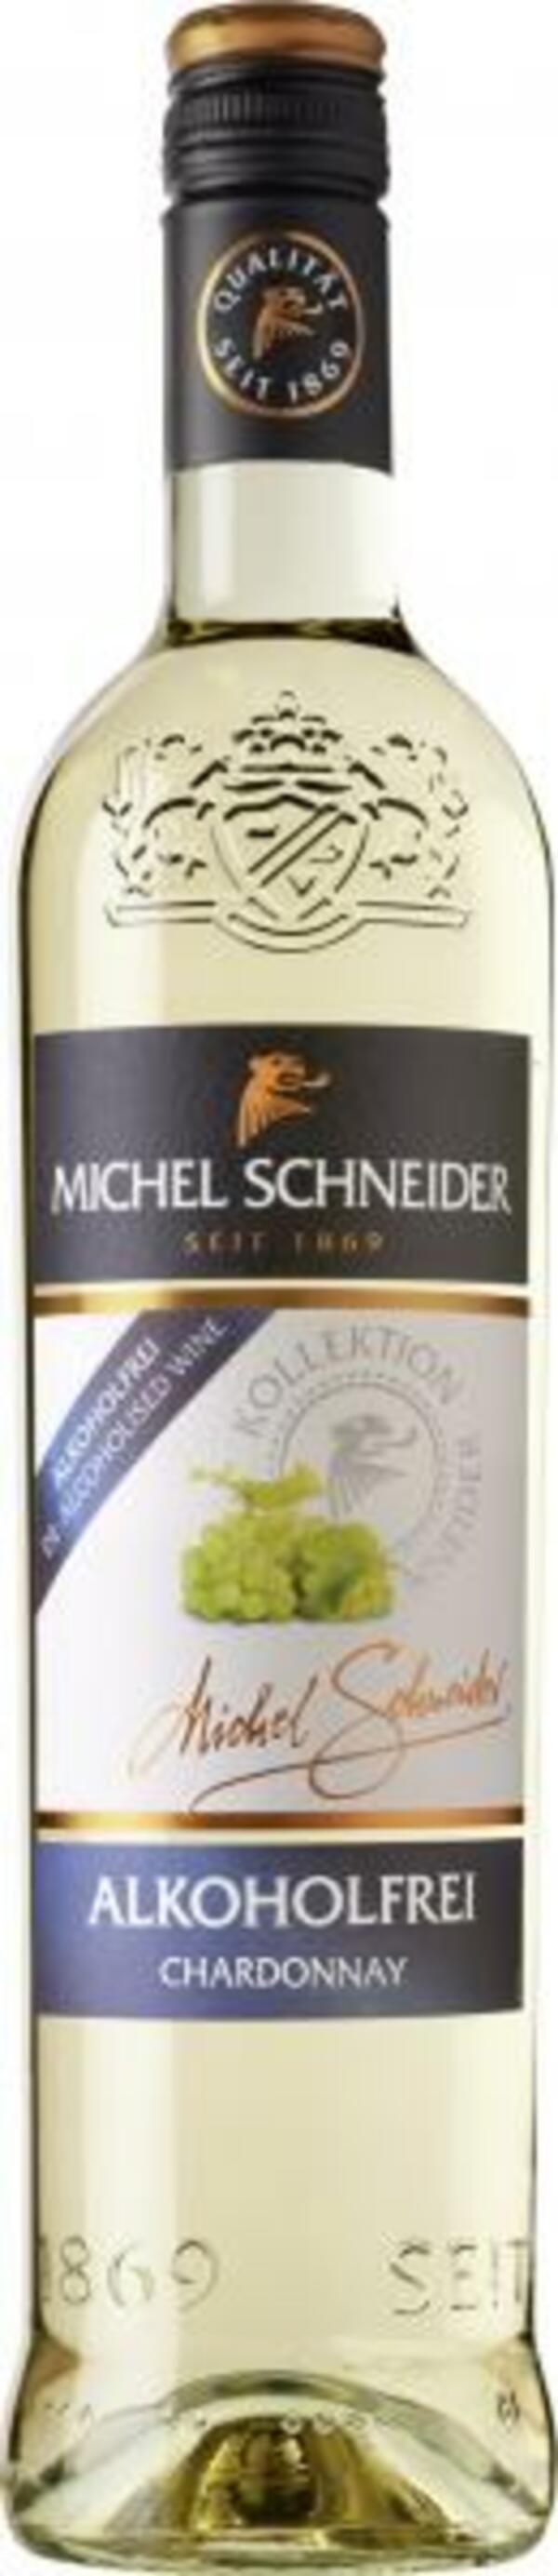 Bild 1 von Michel Schneider Chardonnay Weißwein lieblich alkoholfrei